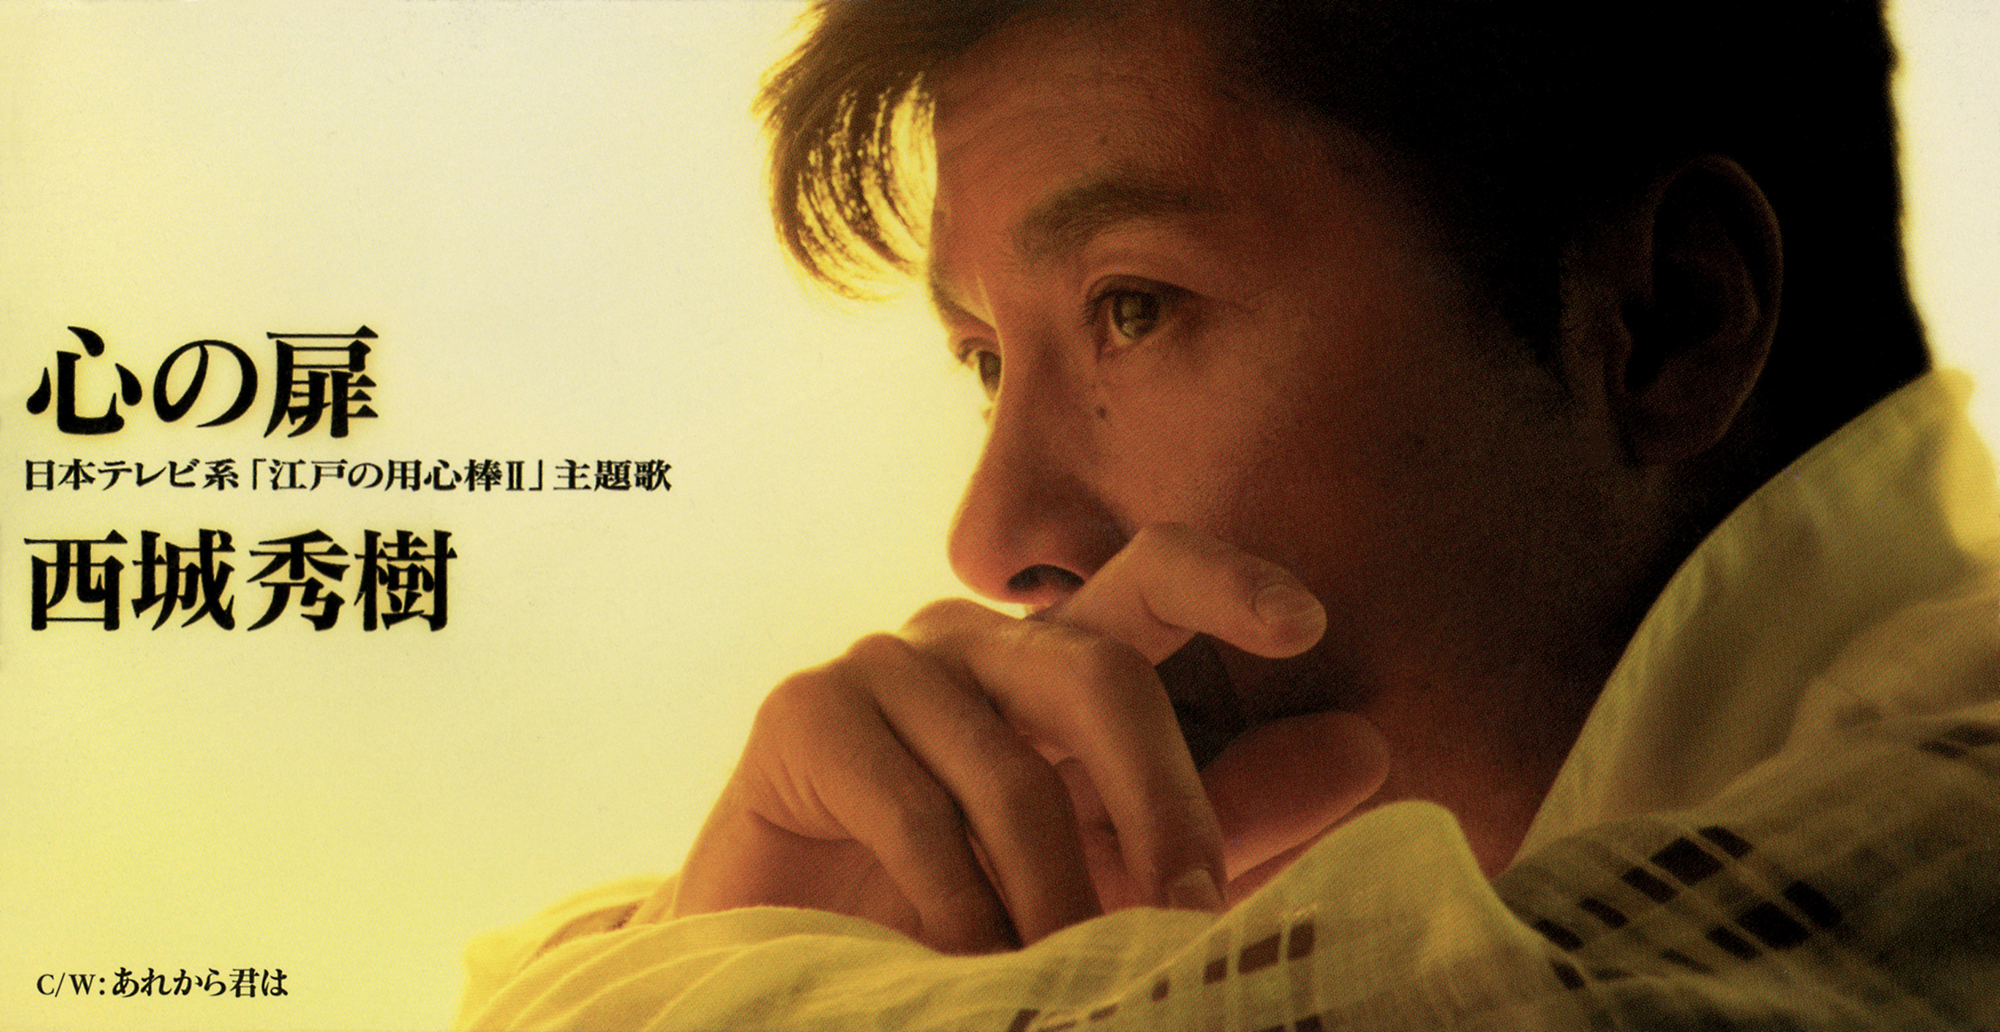 西城秀樹 73rdシングル『心の扉』(1995年11月22日発売) 高画質CDジャケット画像